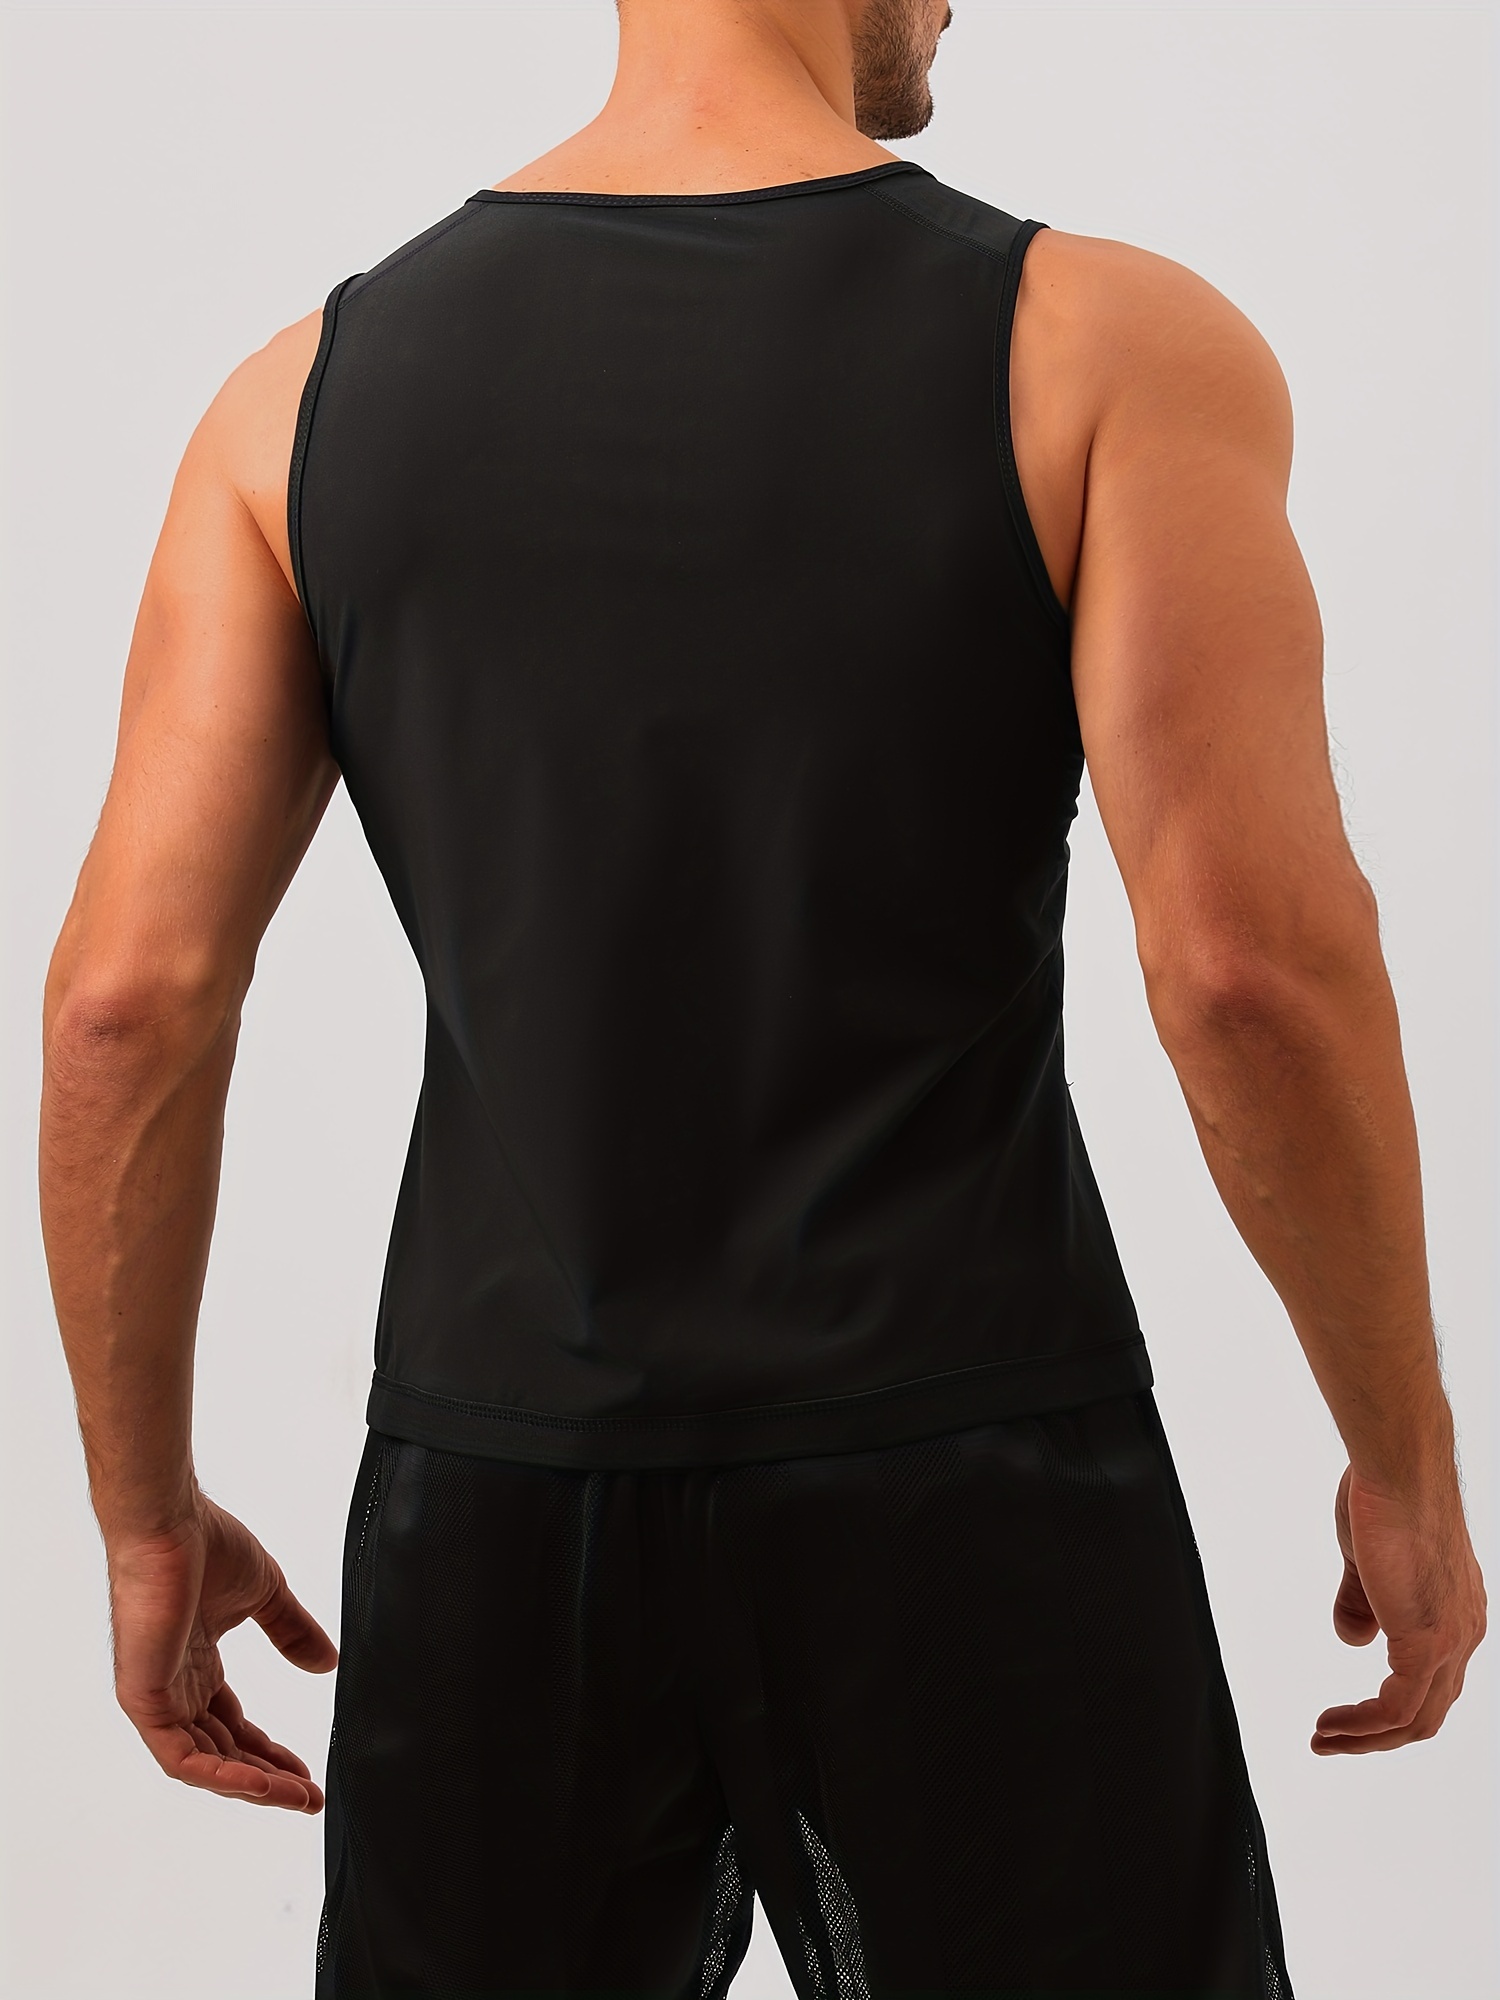 Men Hot Neoprene Sauna Suit Waist Trainer Sweat Vest Zipper Body Shaper  Tank Top